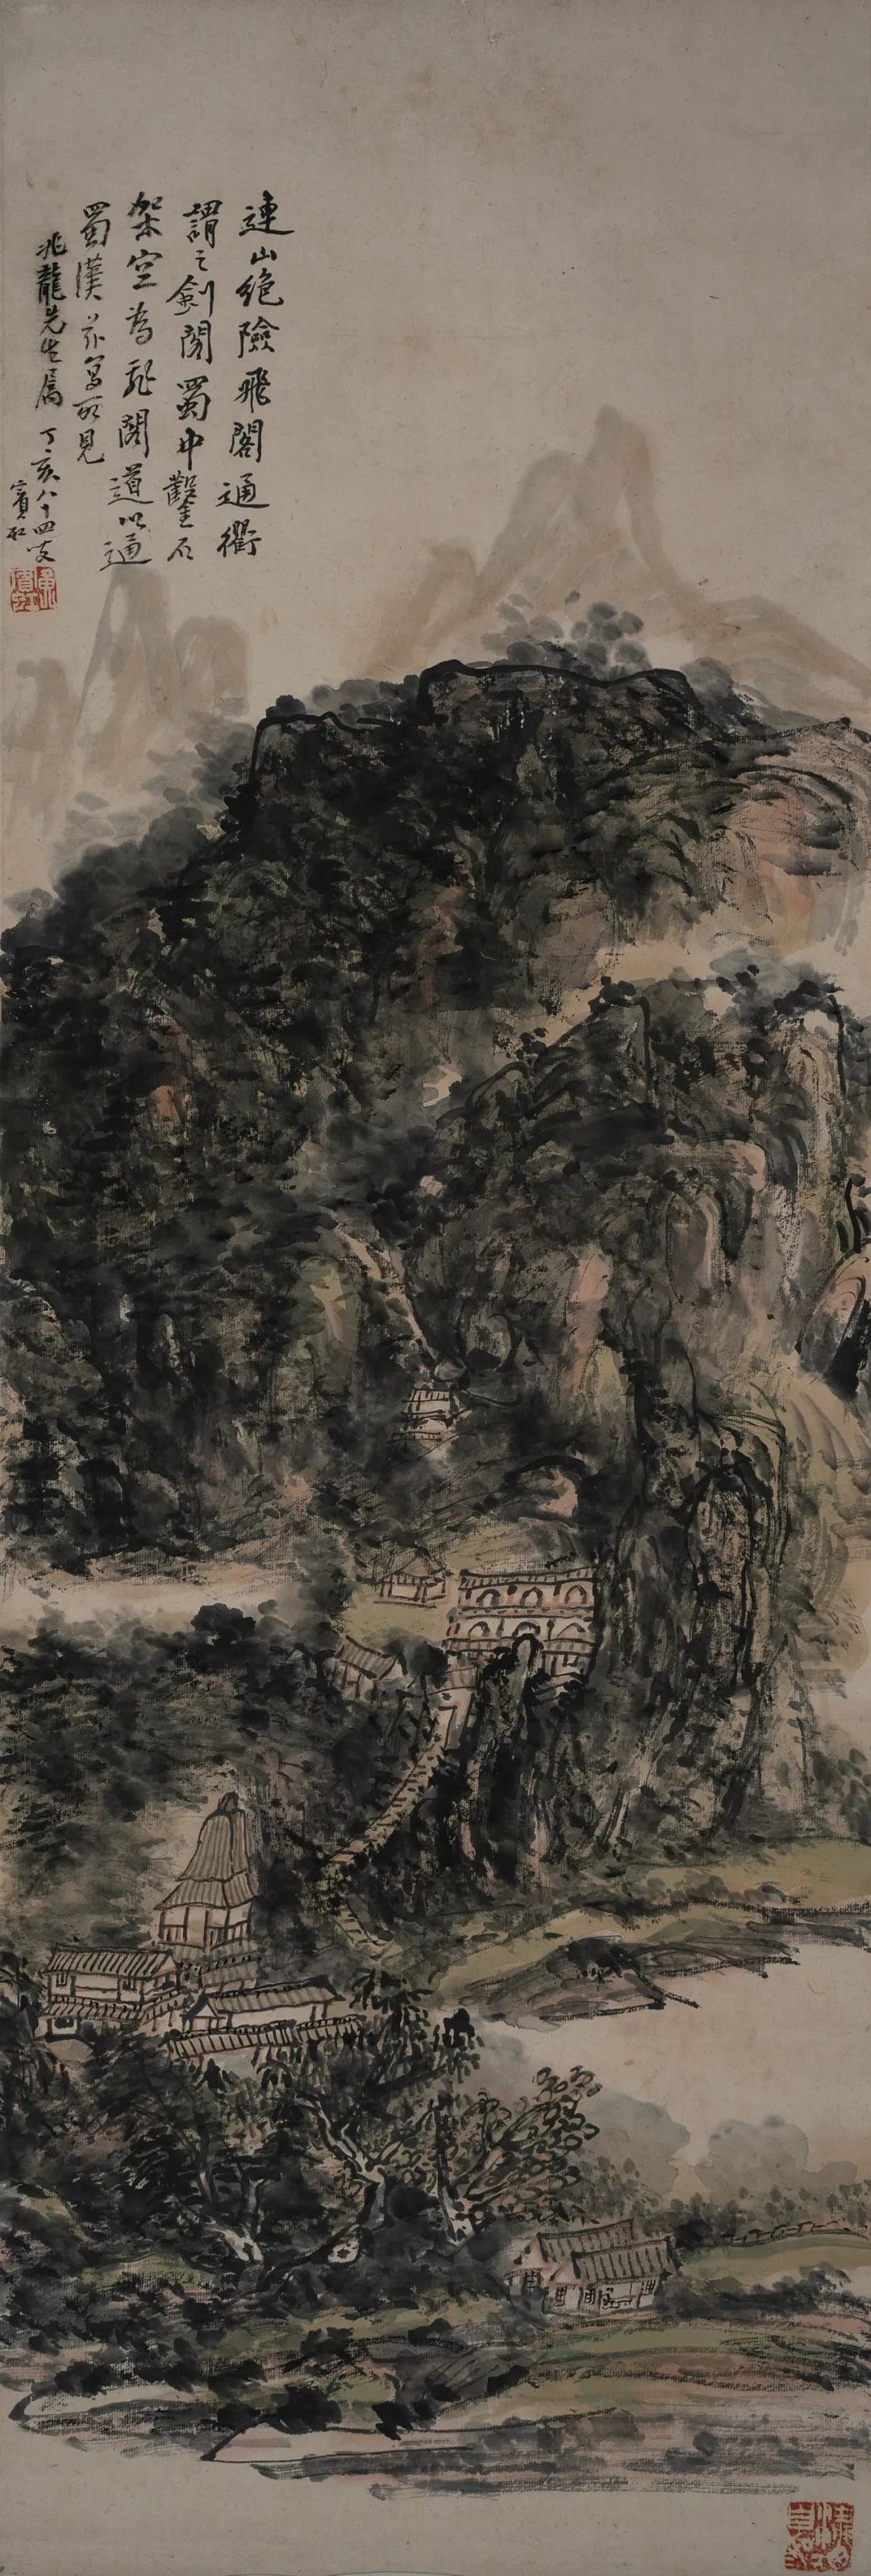 連山絕險圖軸 1945年 黃賓虹 紙本水墨 95.5×32.5cm 安徽中國徽州文化博物館藏